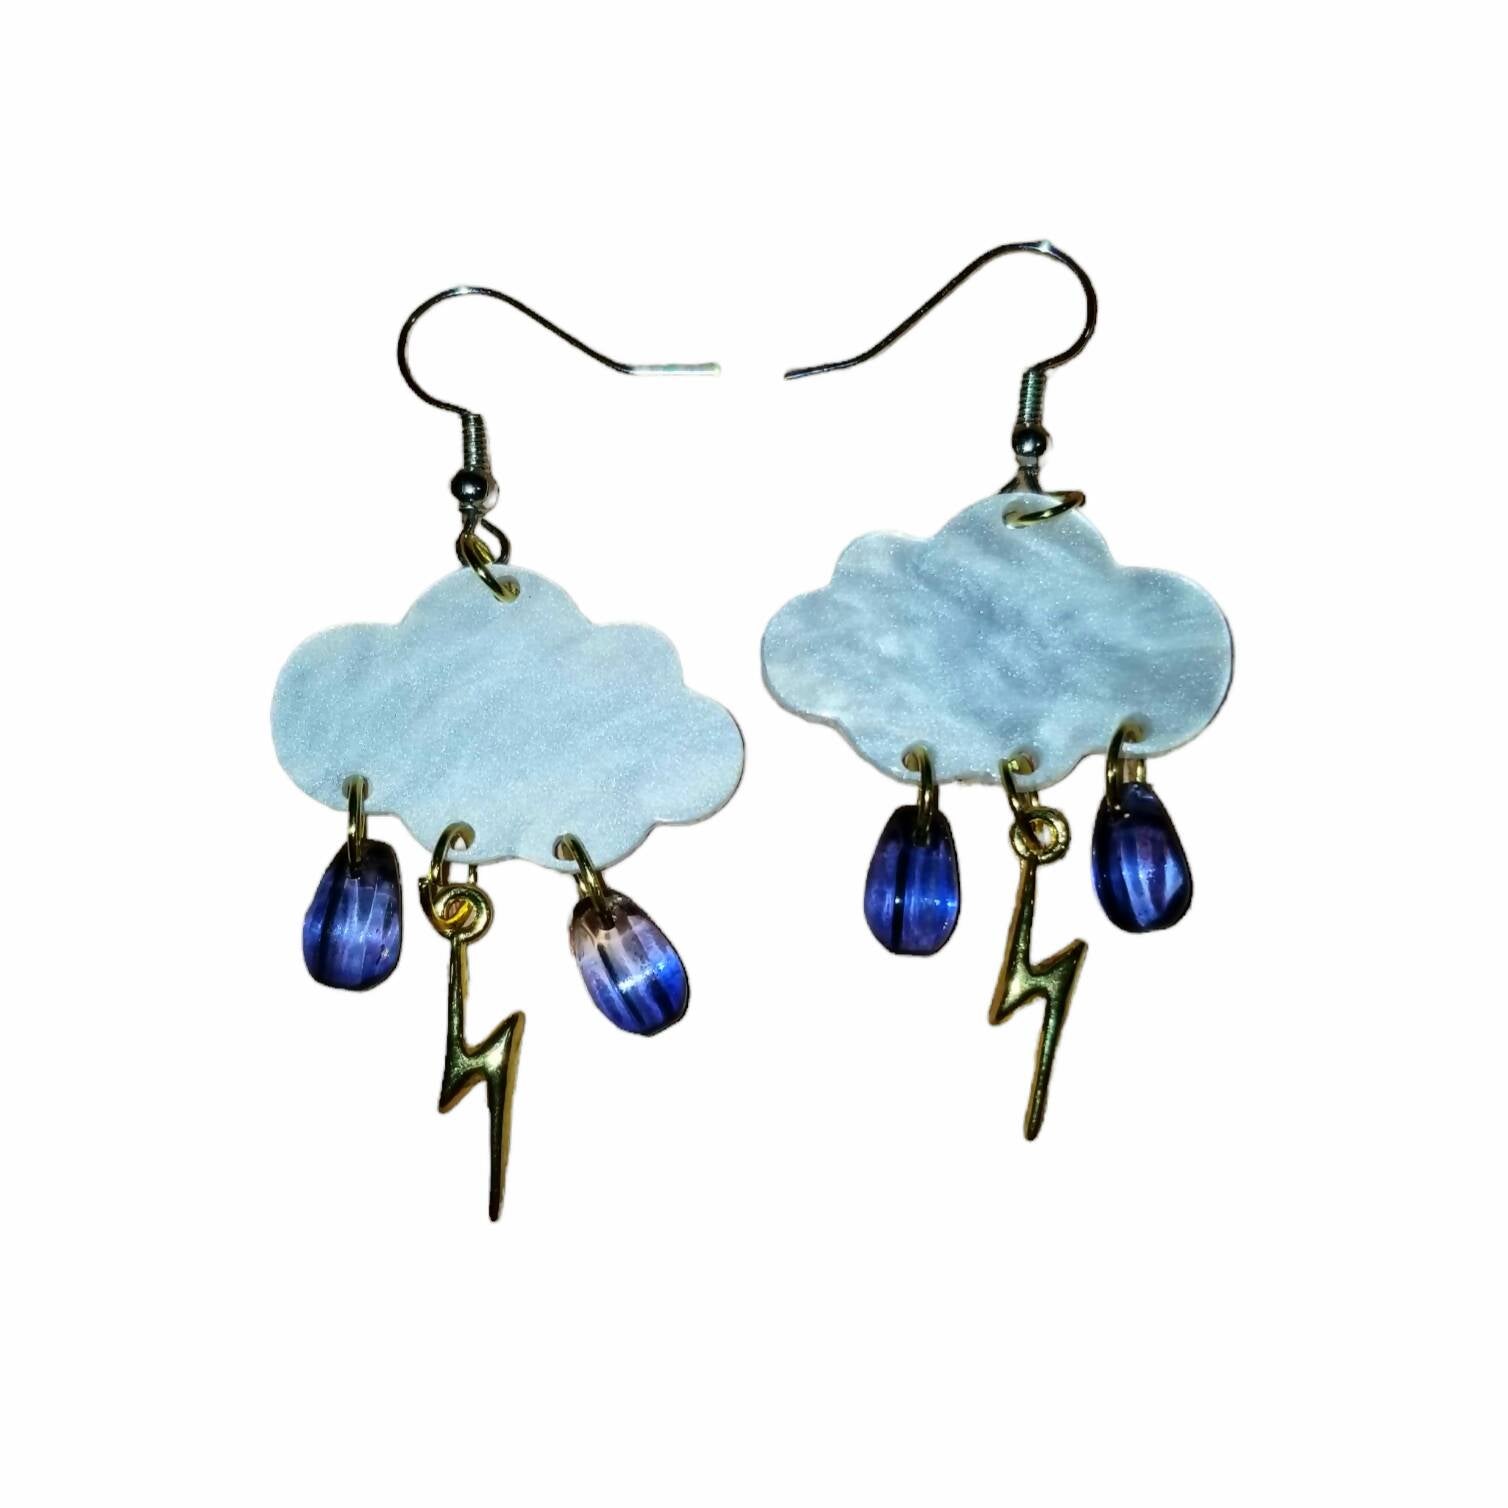 Rain Storm earrings